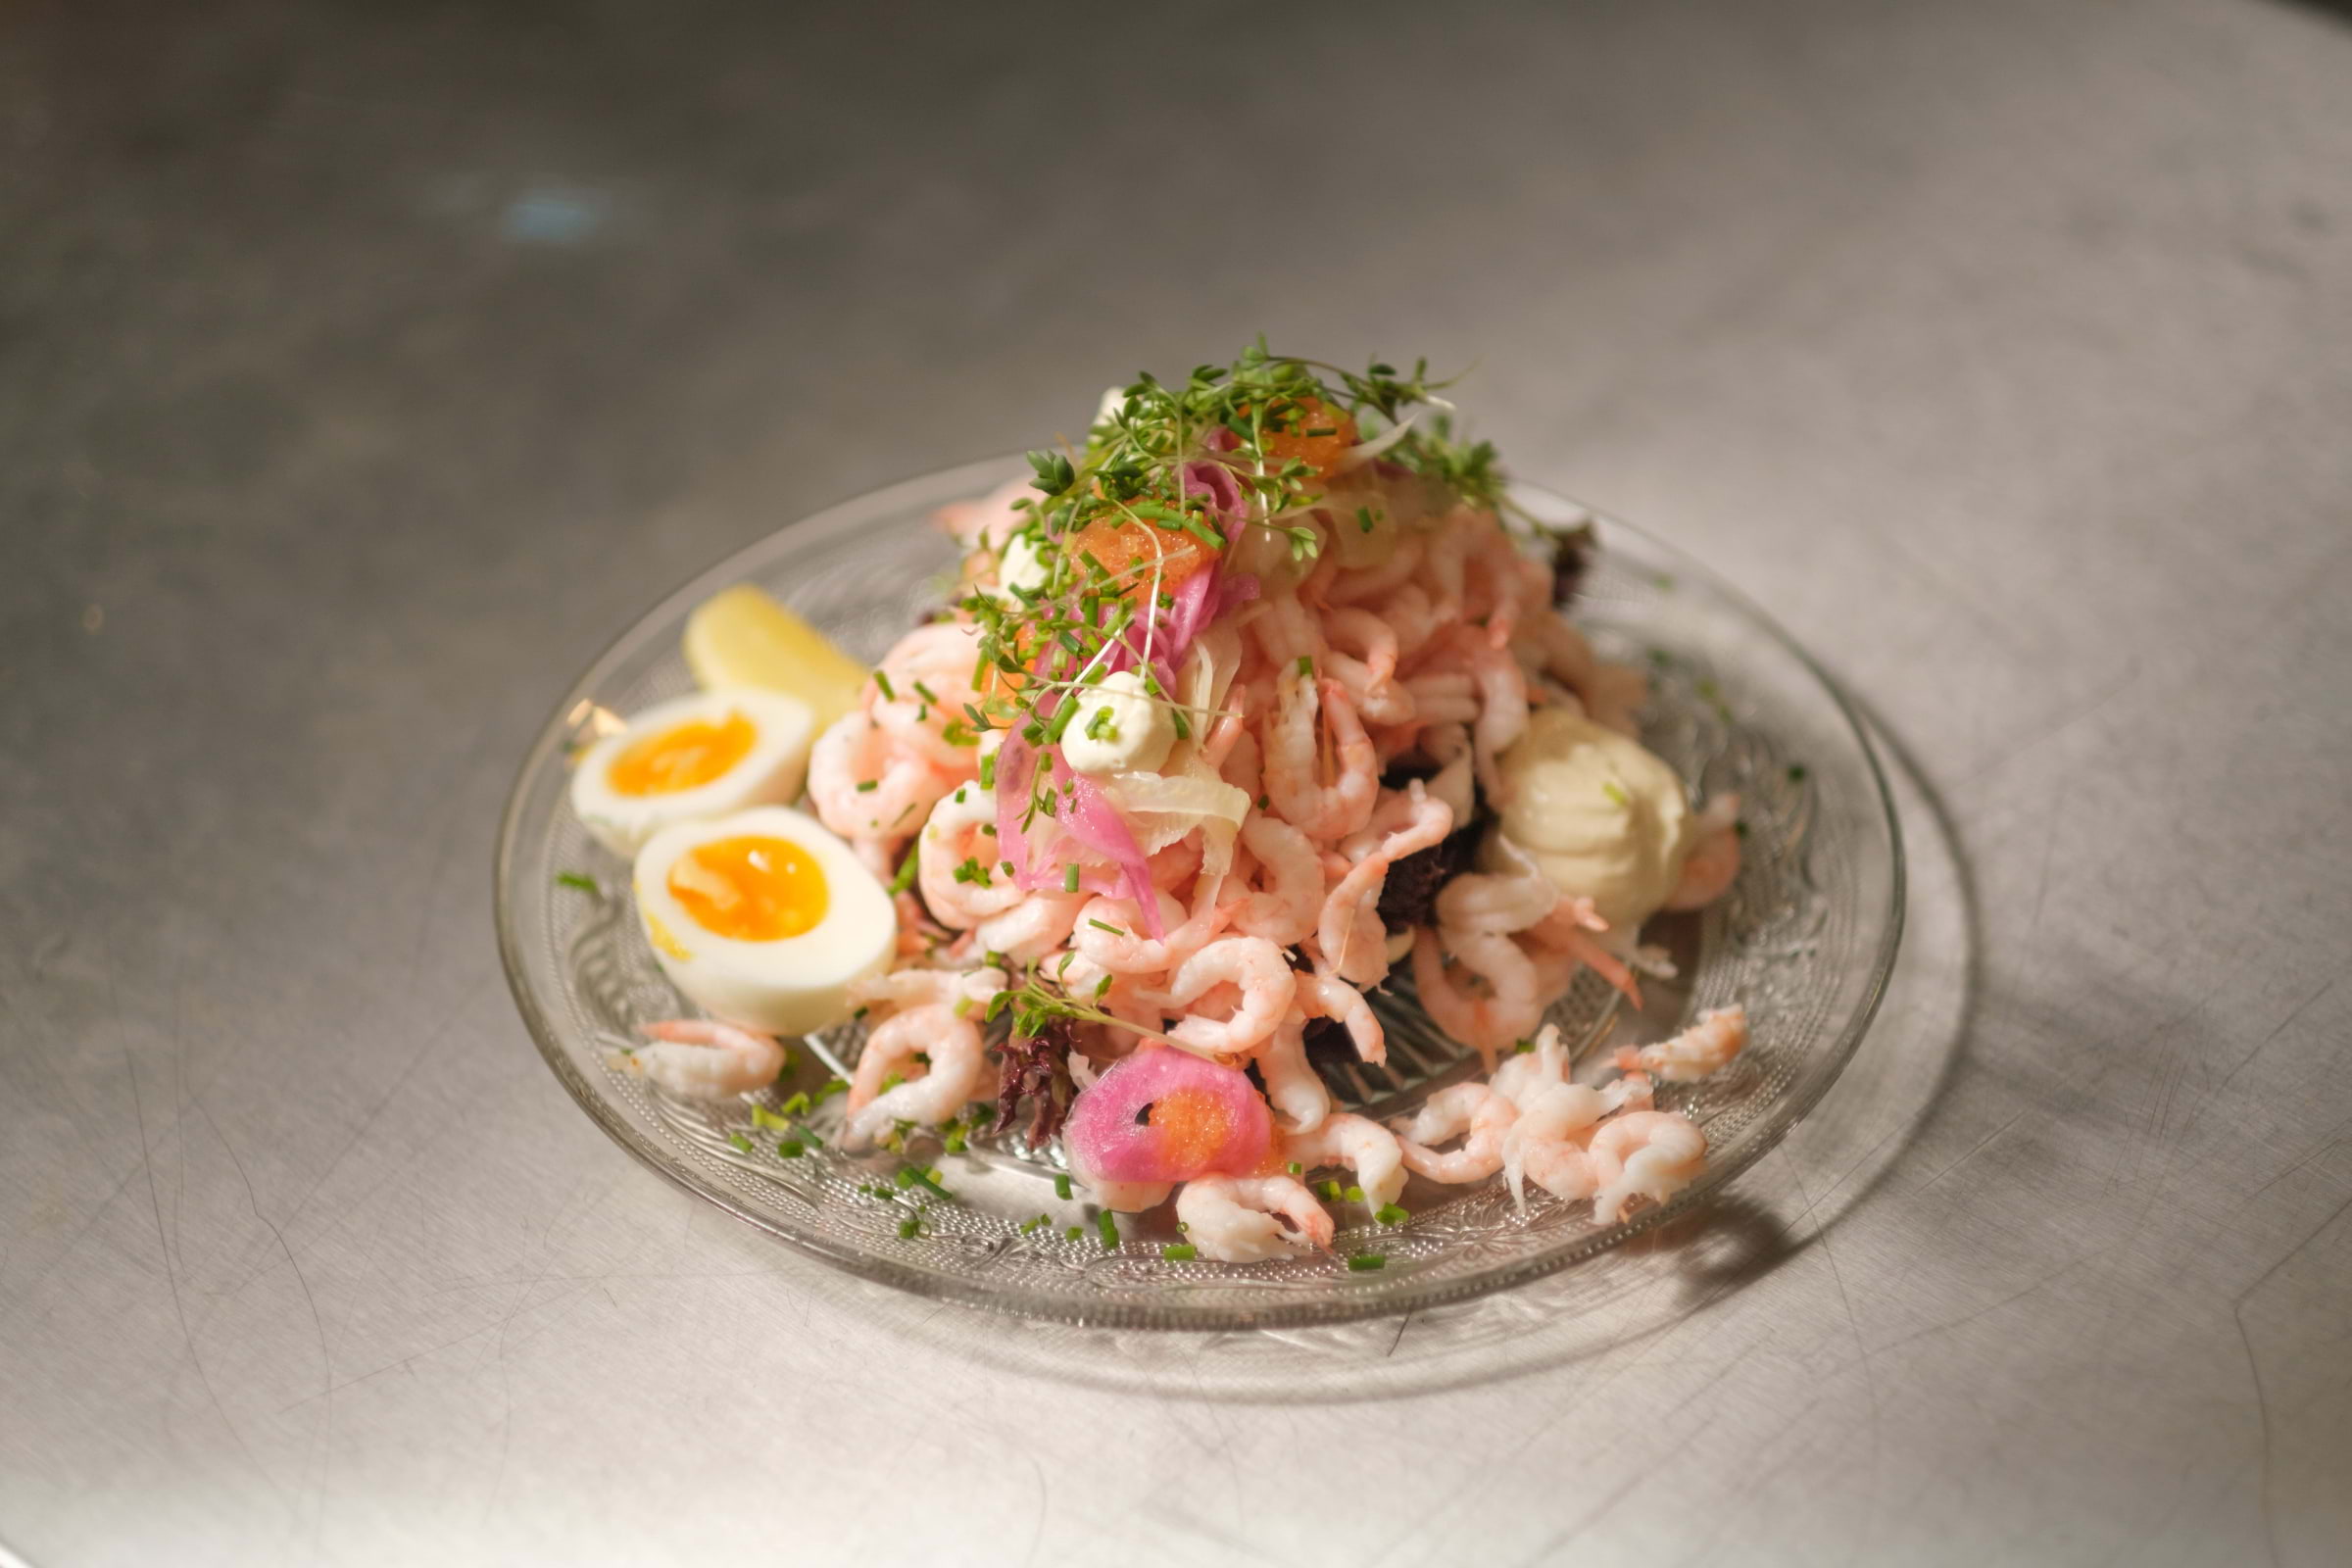 Where to find Gothenburg's best prawn sandwich